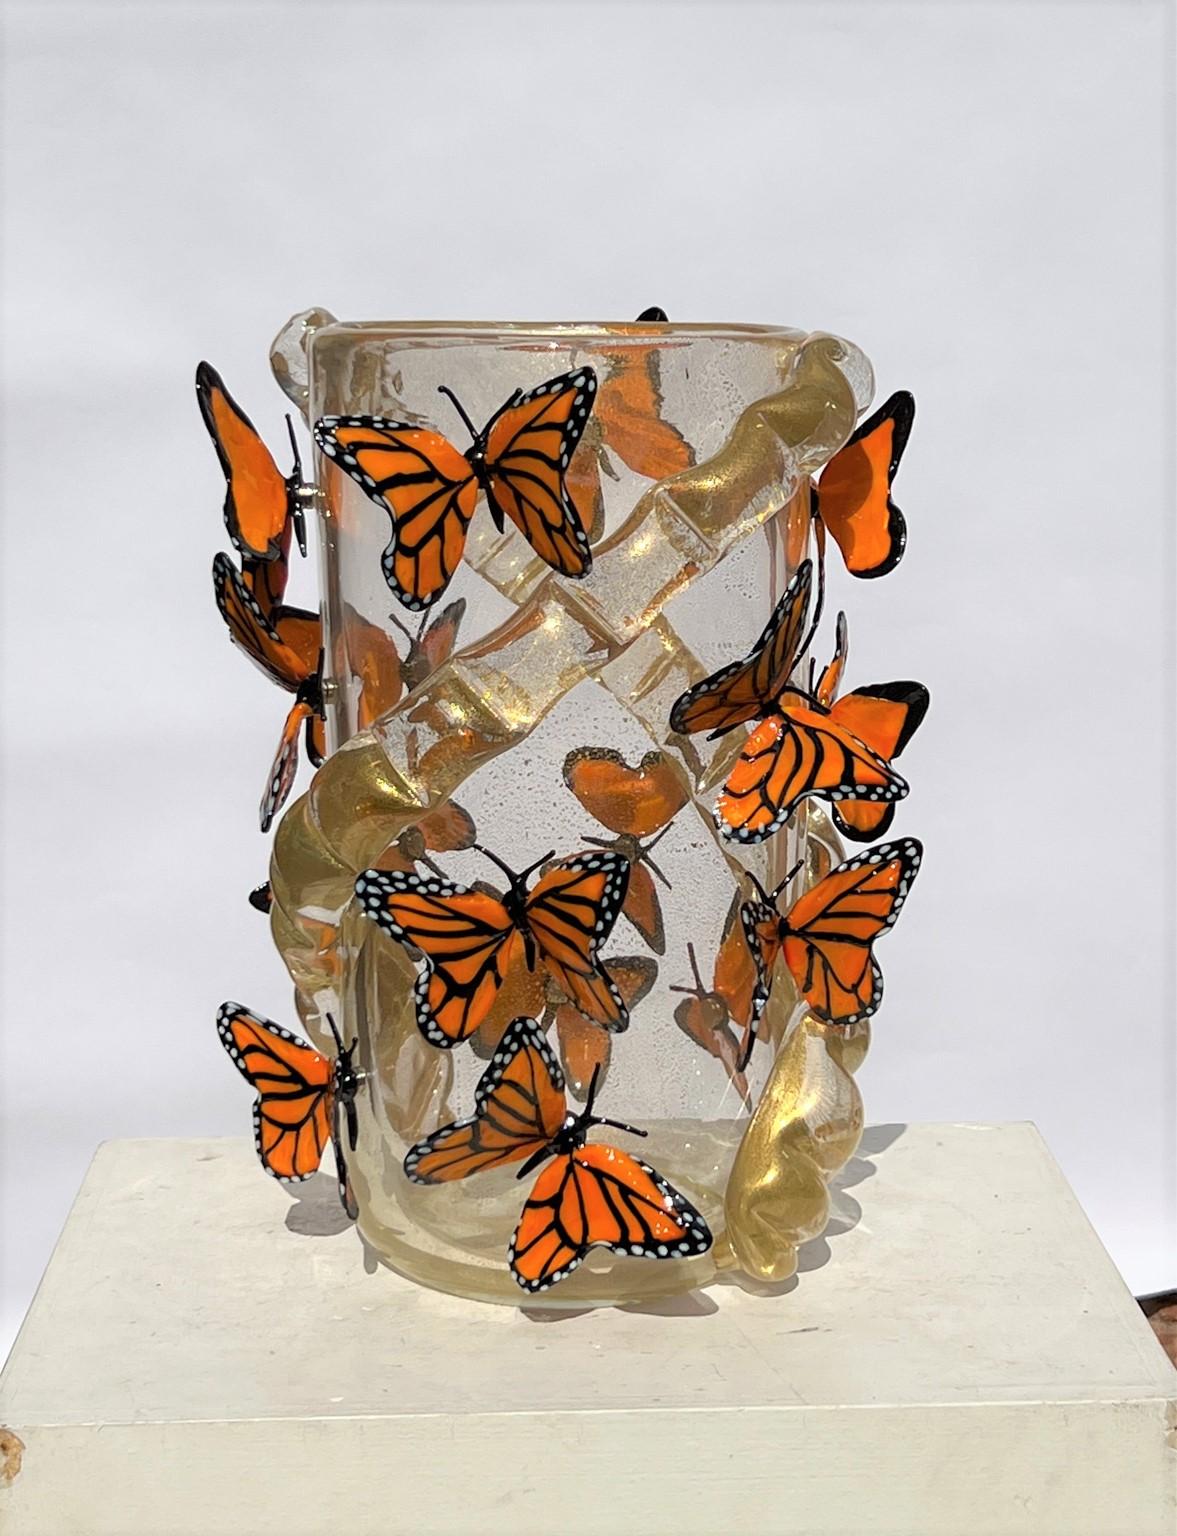 Vase en verre soufflé de Murano fait à la main avec de véritables feuilles d'or 24kt et des papillons monarques attachés avec un aimant. Le vase contient 16 papillons monarques.
Vase moderne idéal pour un environnement moderne et rustique classique,